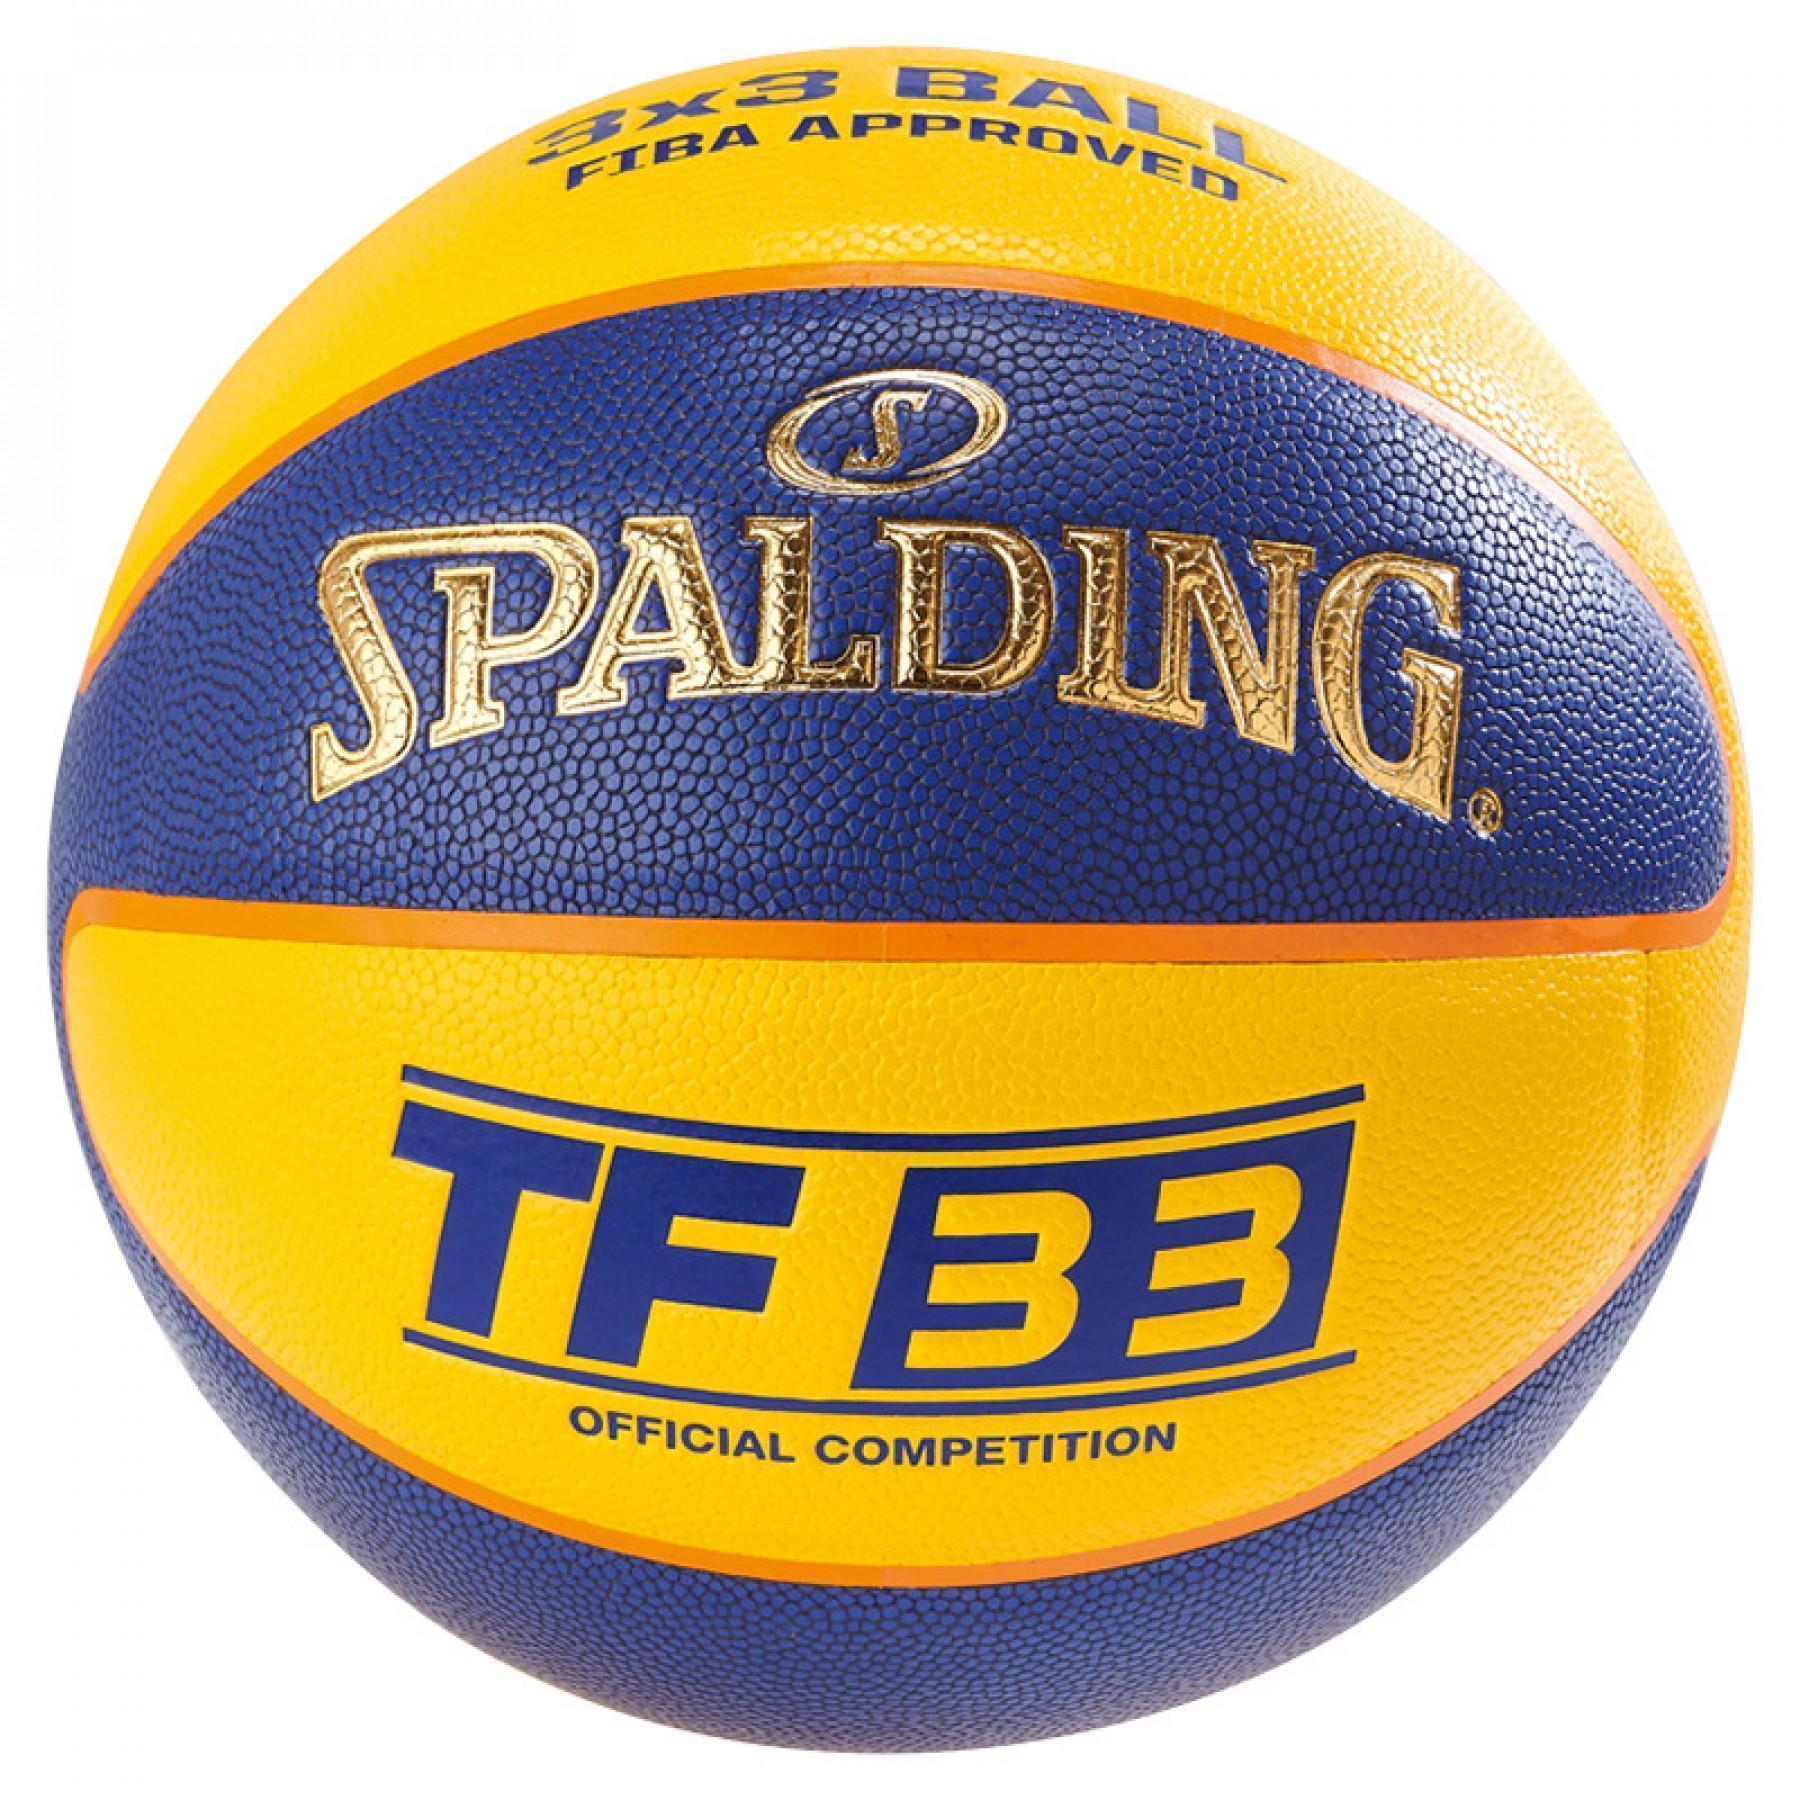 Balloon Spalding Tf33 Official Game (76-257z)